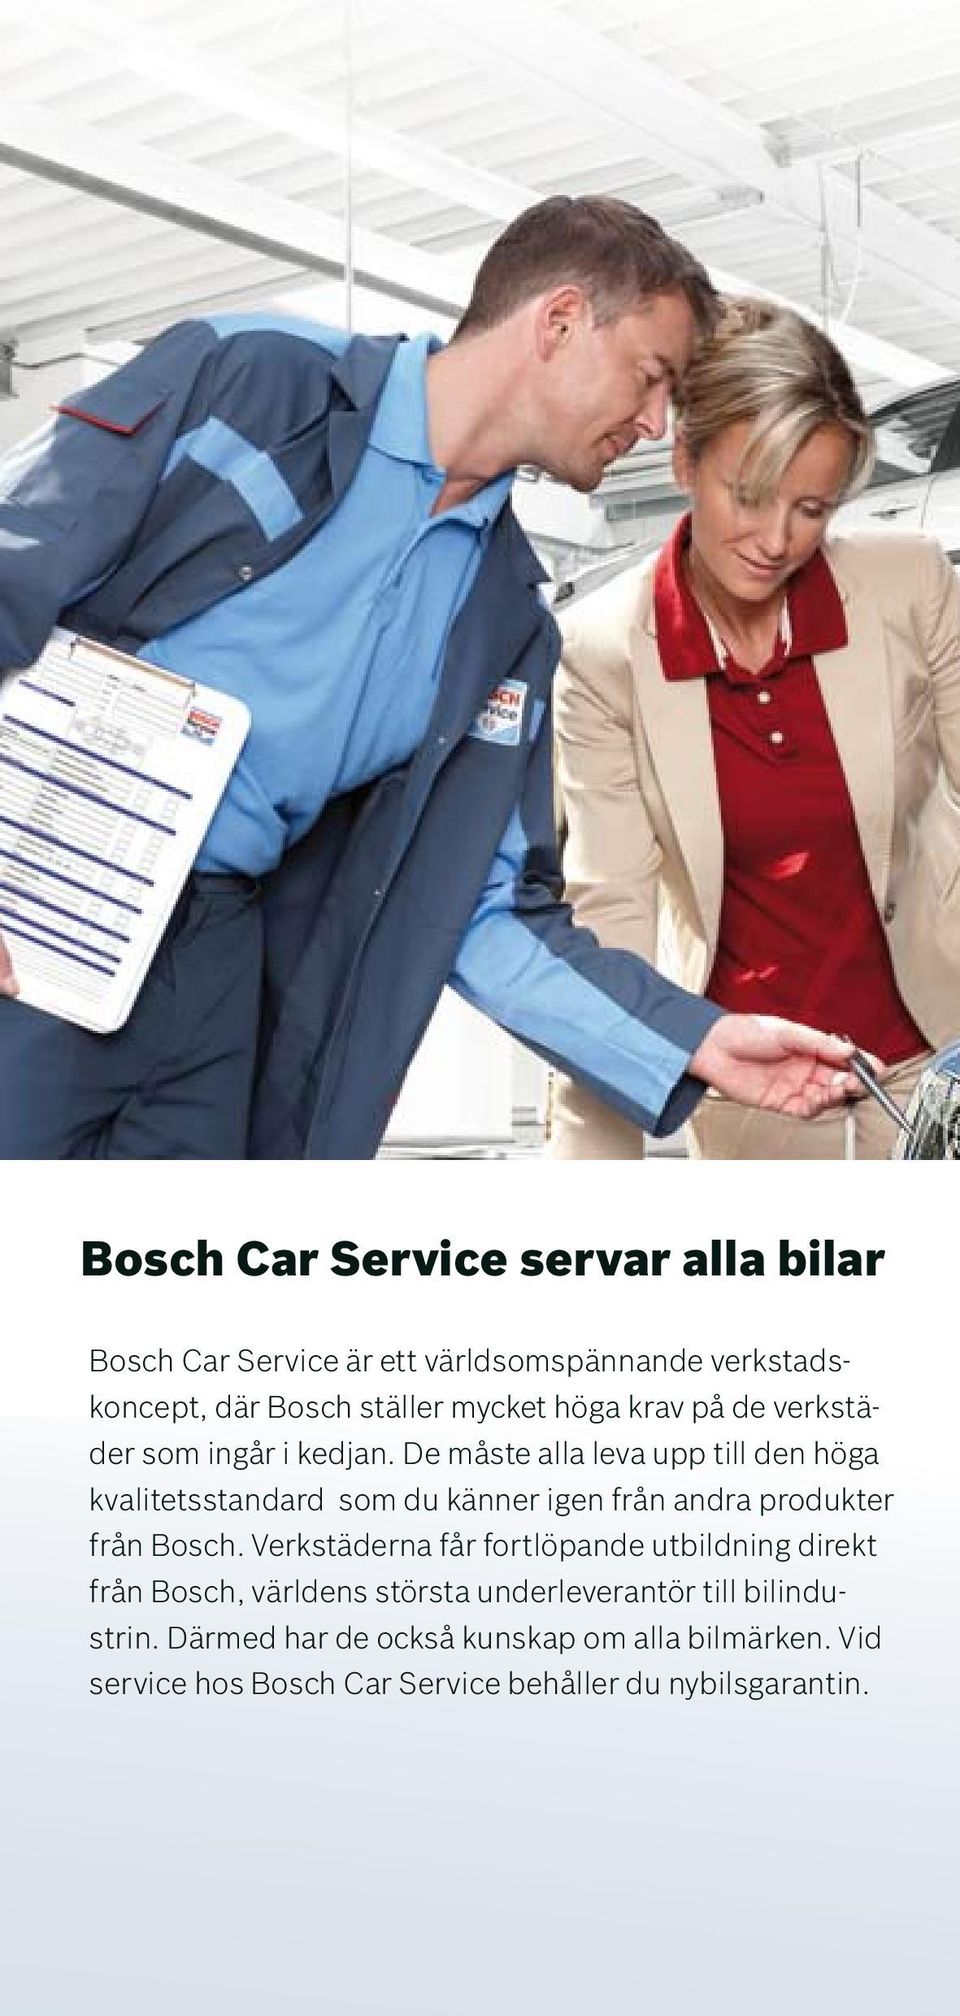 De måste alla leva upp till den höga kvalitetsstandard som du känner igen från andra produkter från Bosch.